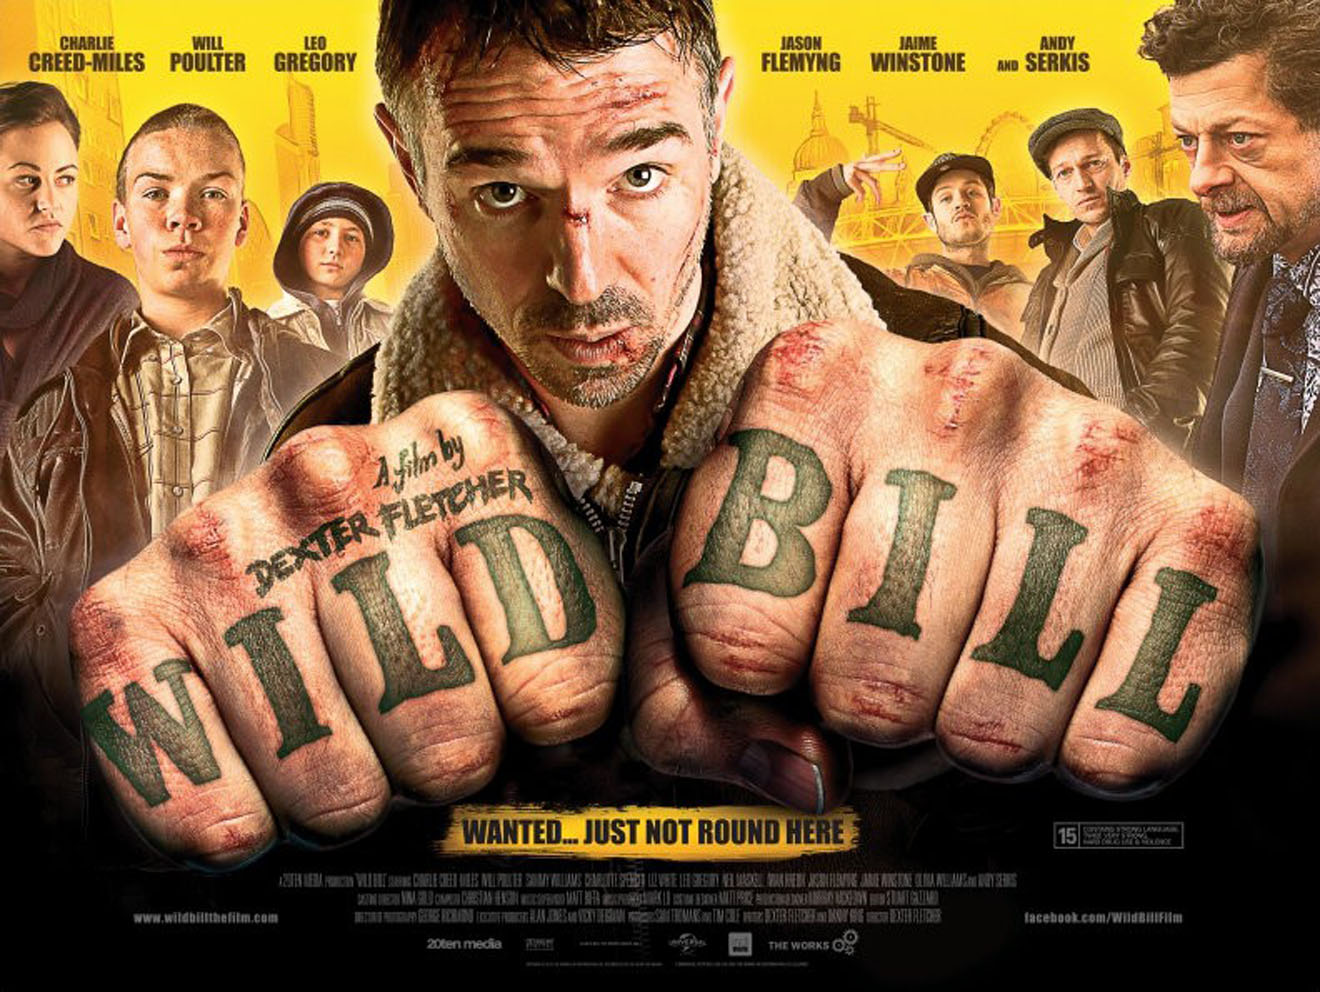 Wild Bill movie